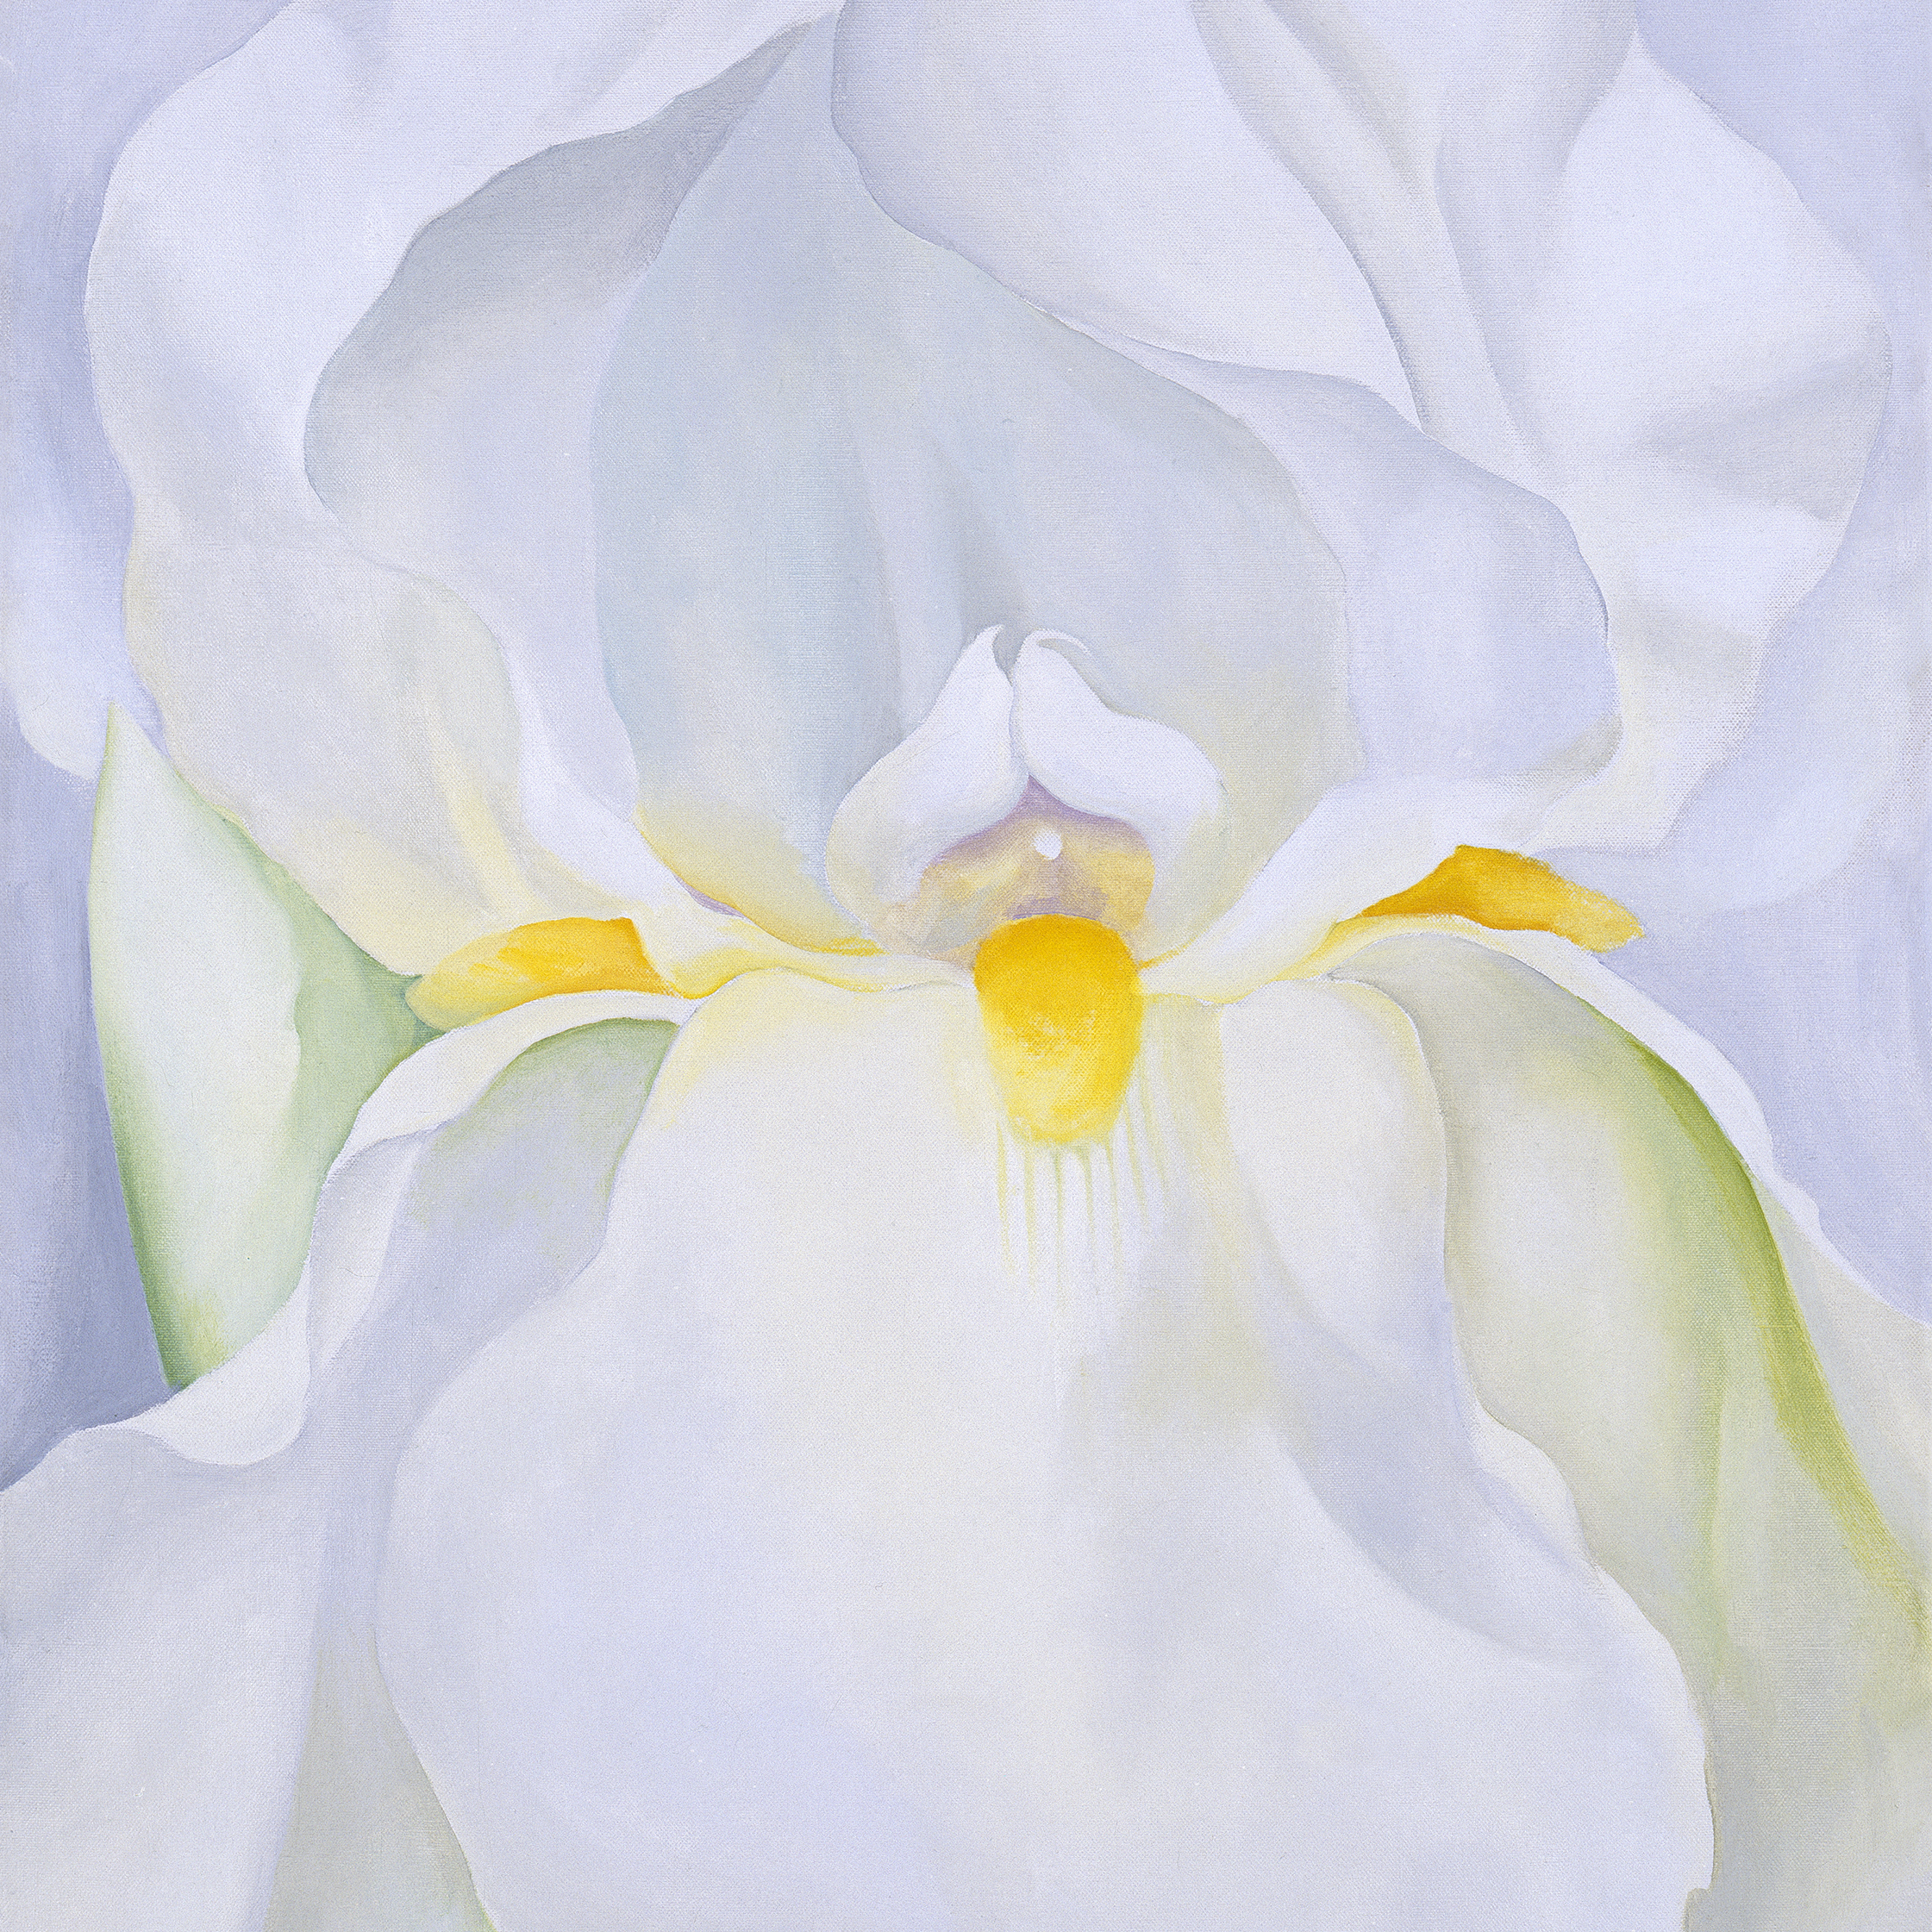 Georgia O'Keeffe, White Iris nº 7 (detail), 1957